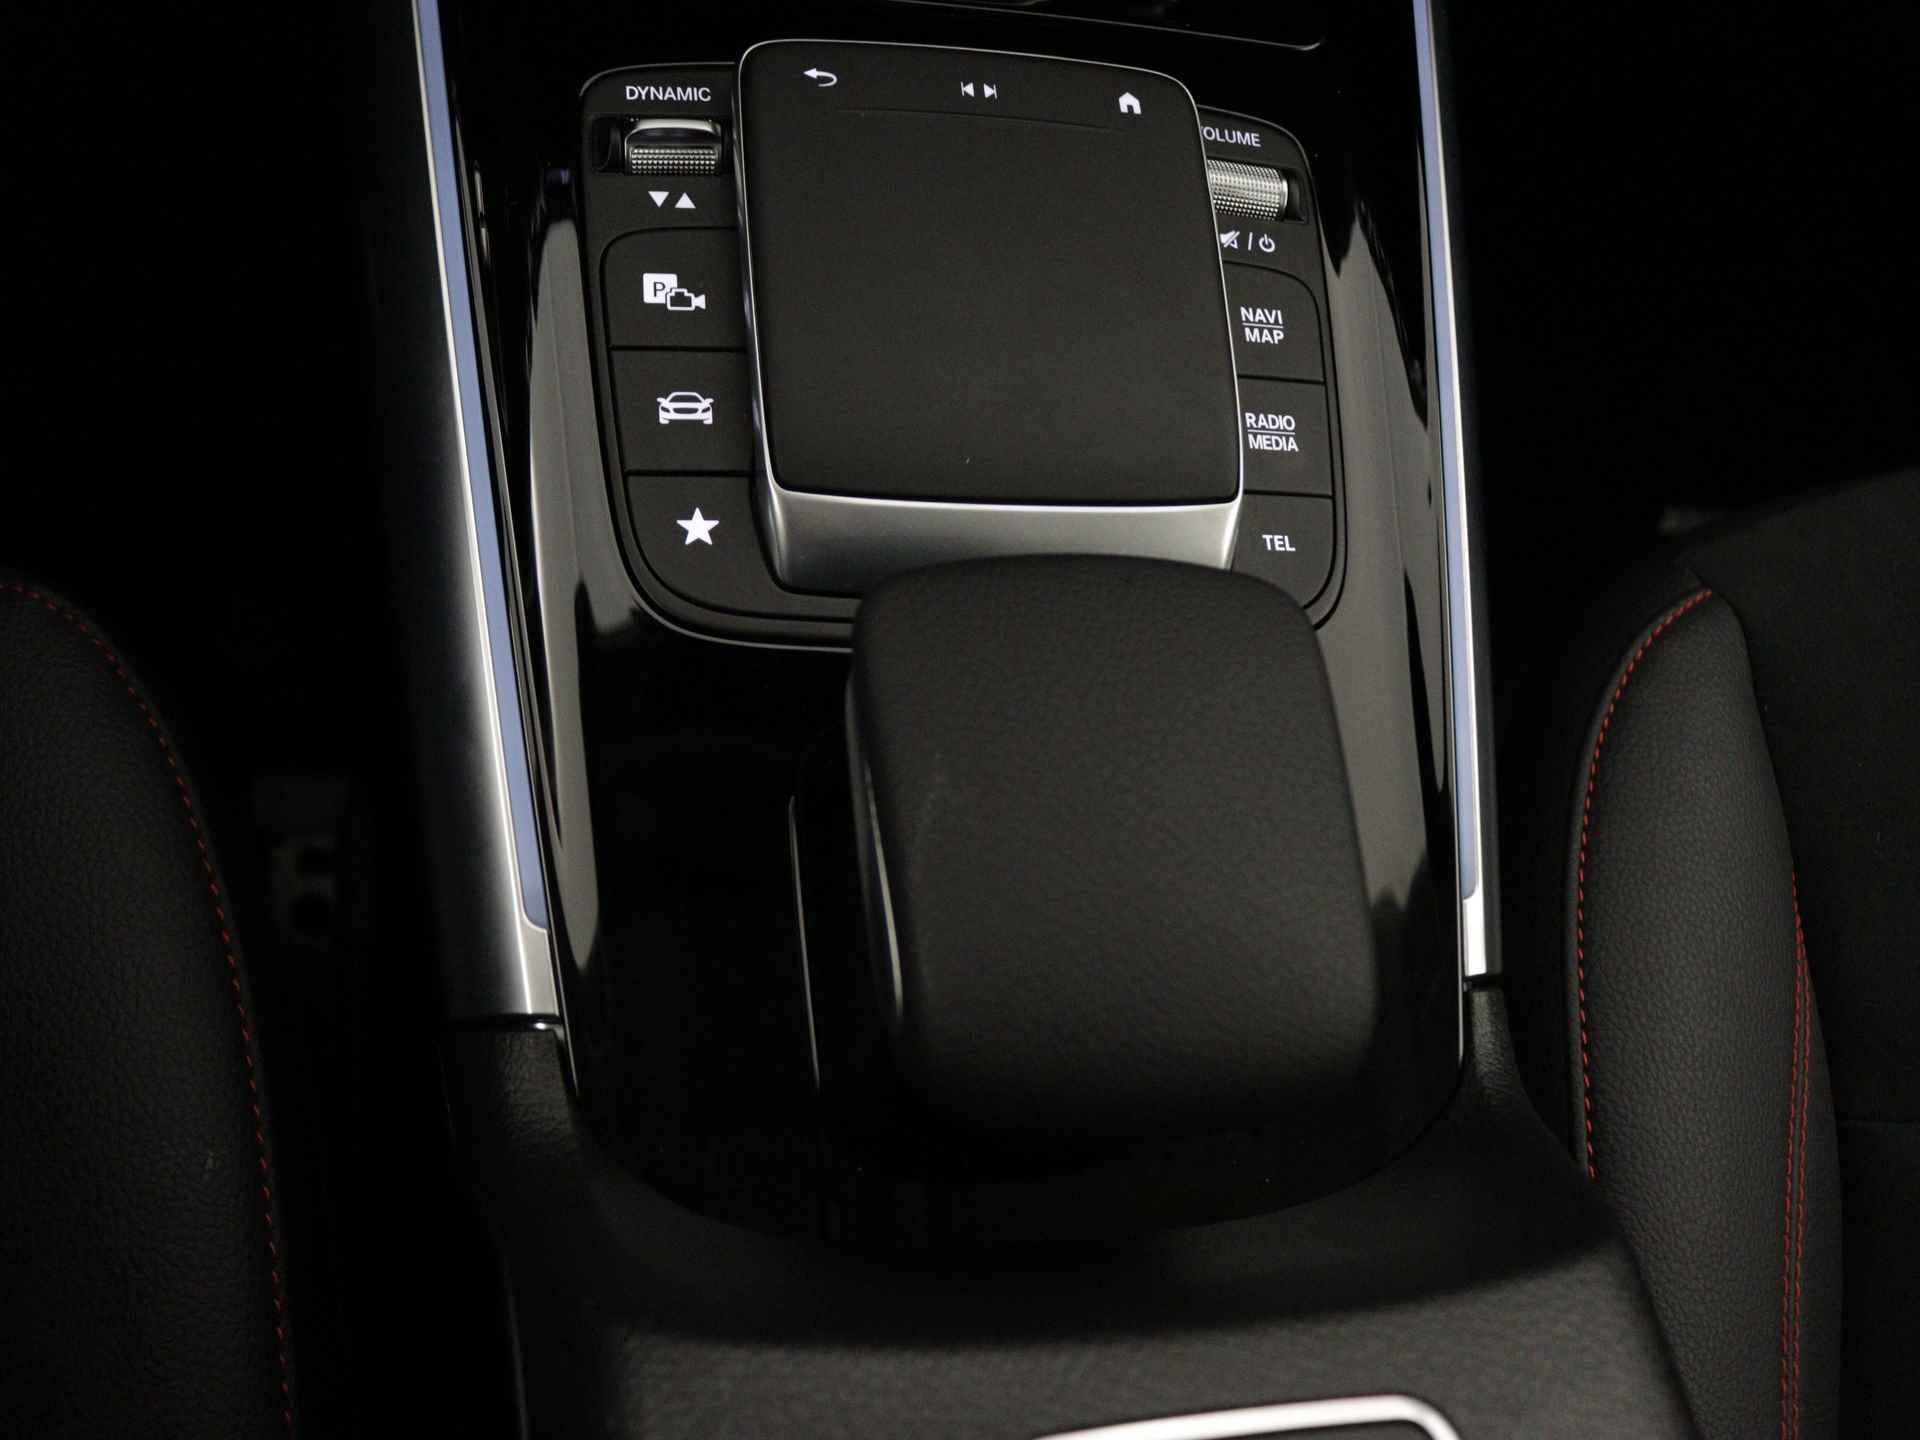 Mercedes-Benz B-Klasse 250 e AMG Line Limited Multispaaks lichtmetalen velgen | MBUX wide screen | Navigatie | Parking support | Inclusief 24 maanden Mercedes-Benz Certified garantie voor Europa. | - 13/45